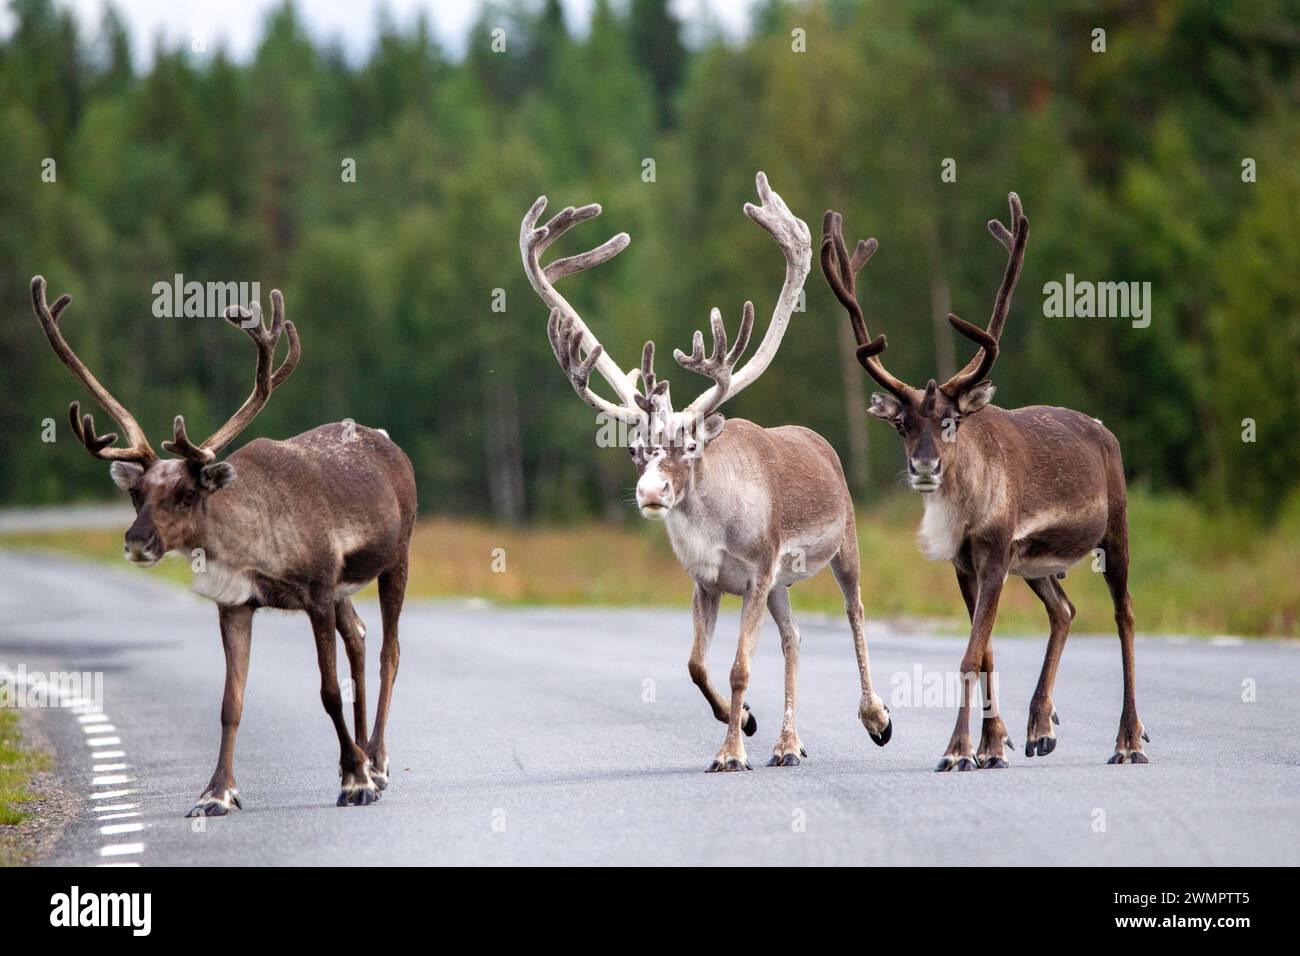 Rebtiere auf der Straße reindeer in the forest on the road in the summer. Stock Photo